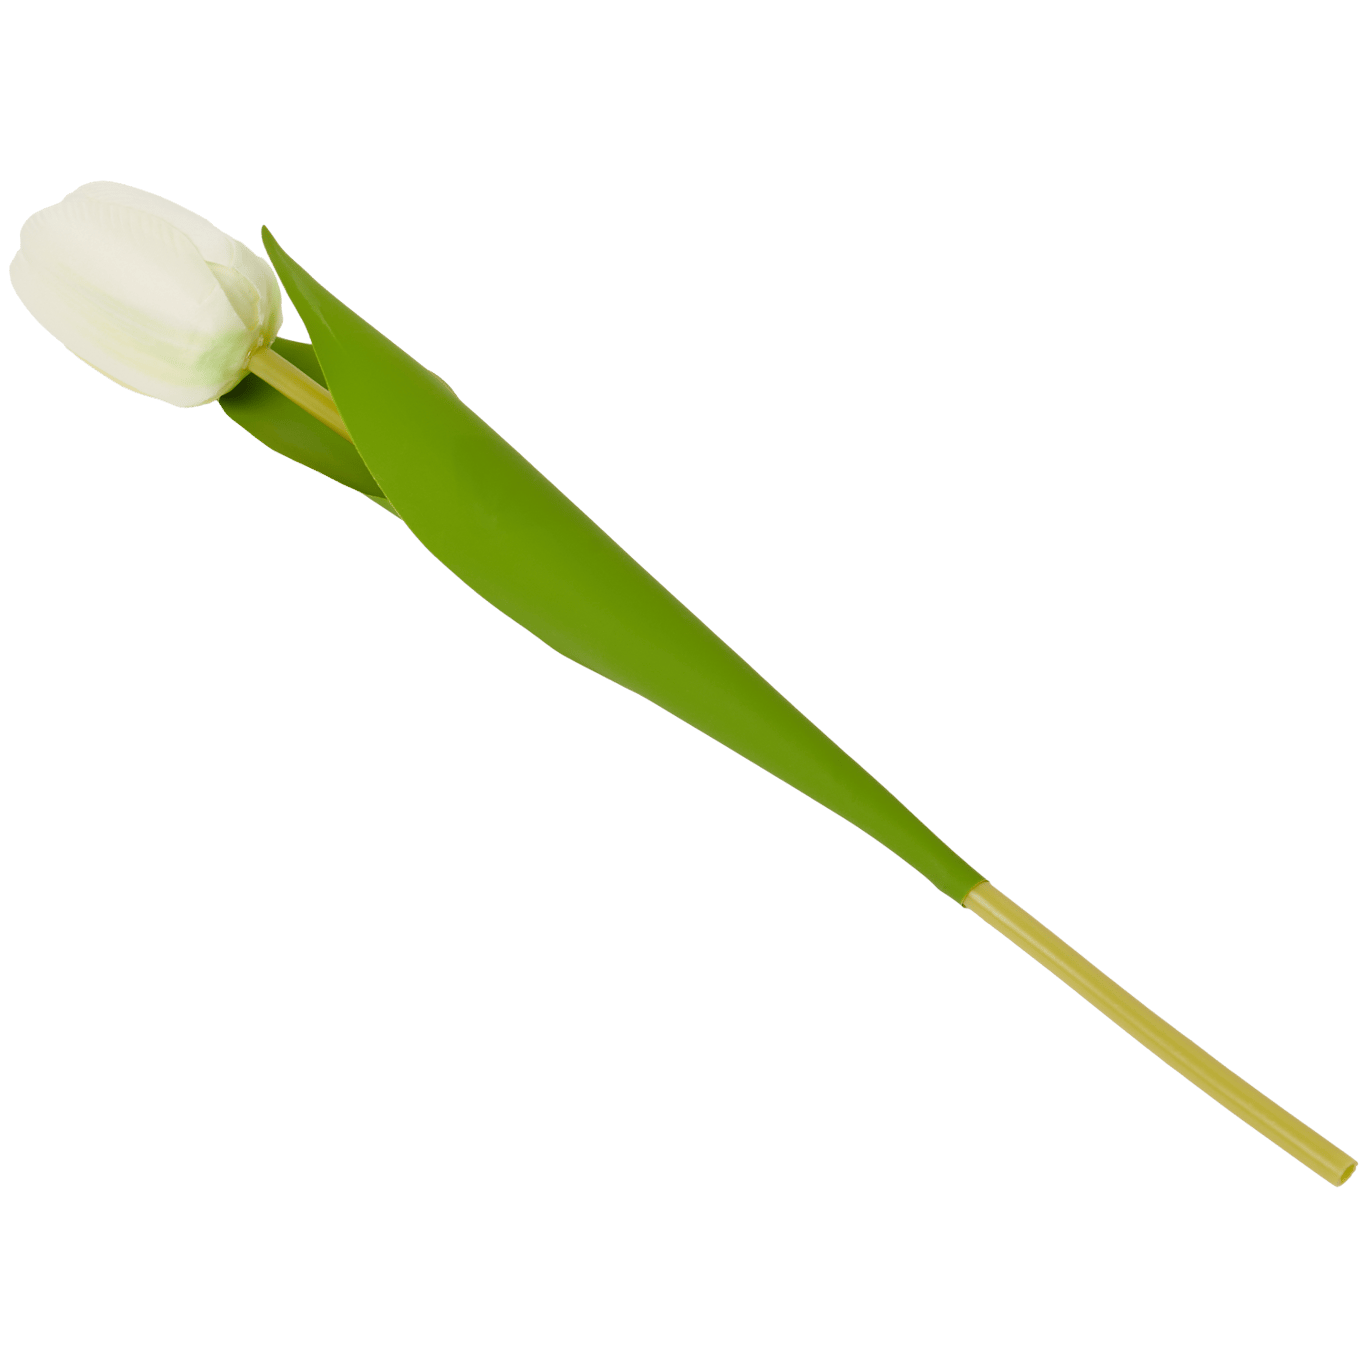 Tulipán artificial